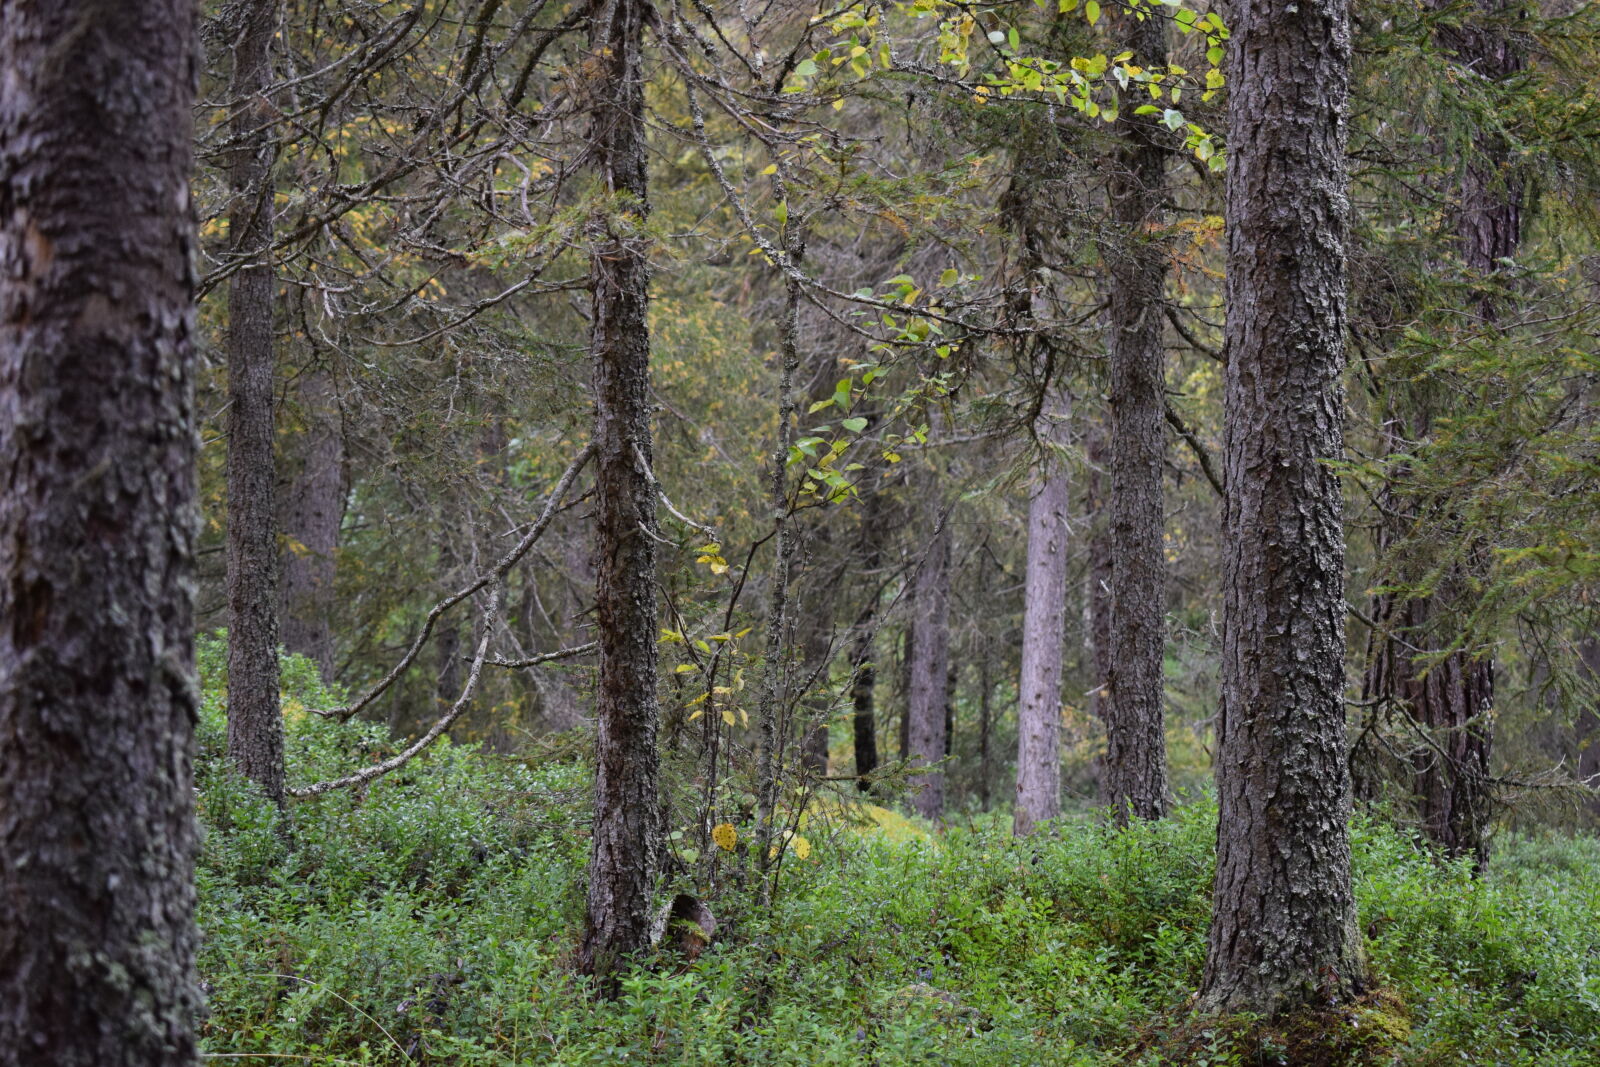 Nikon D3300 + Nikon AF-P DX Nikkor 18-55mm F3.5-5.6G sample photo. Finland, forest, pine photography